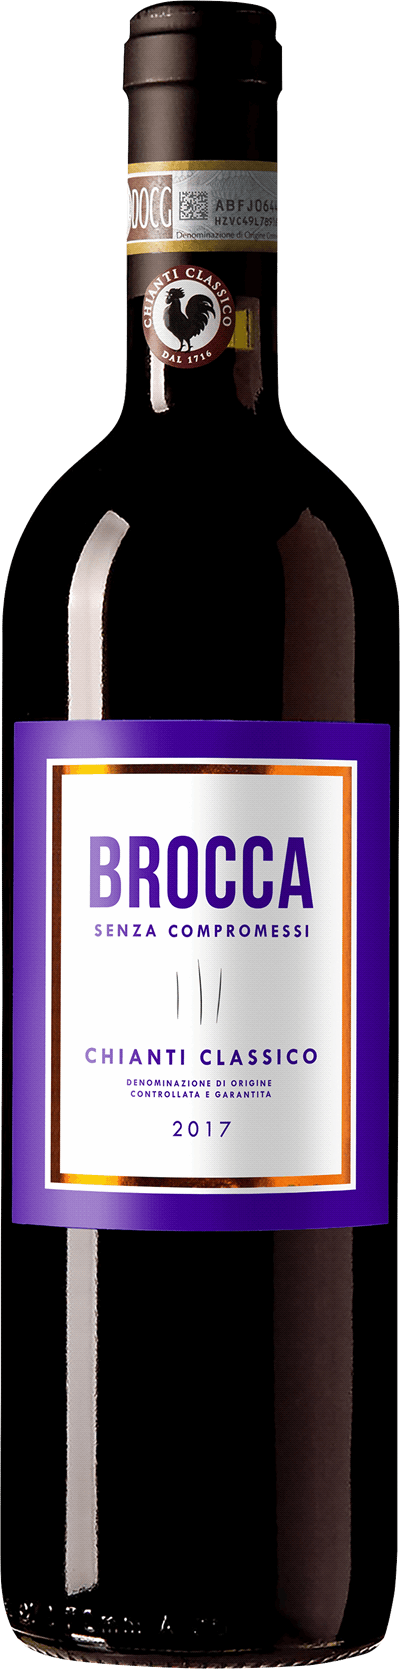 Brocca Chianti Classico, 2017